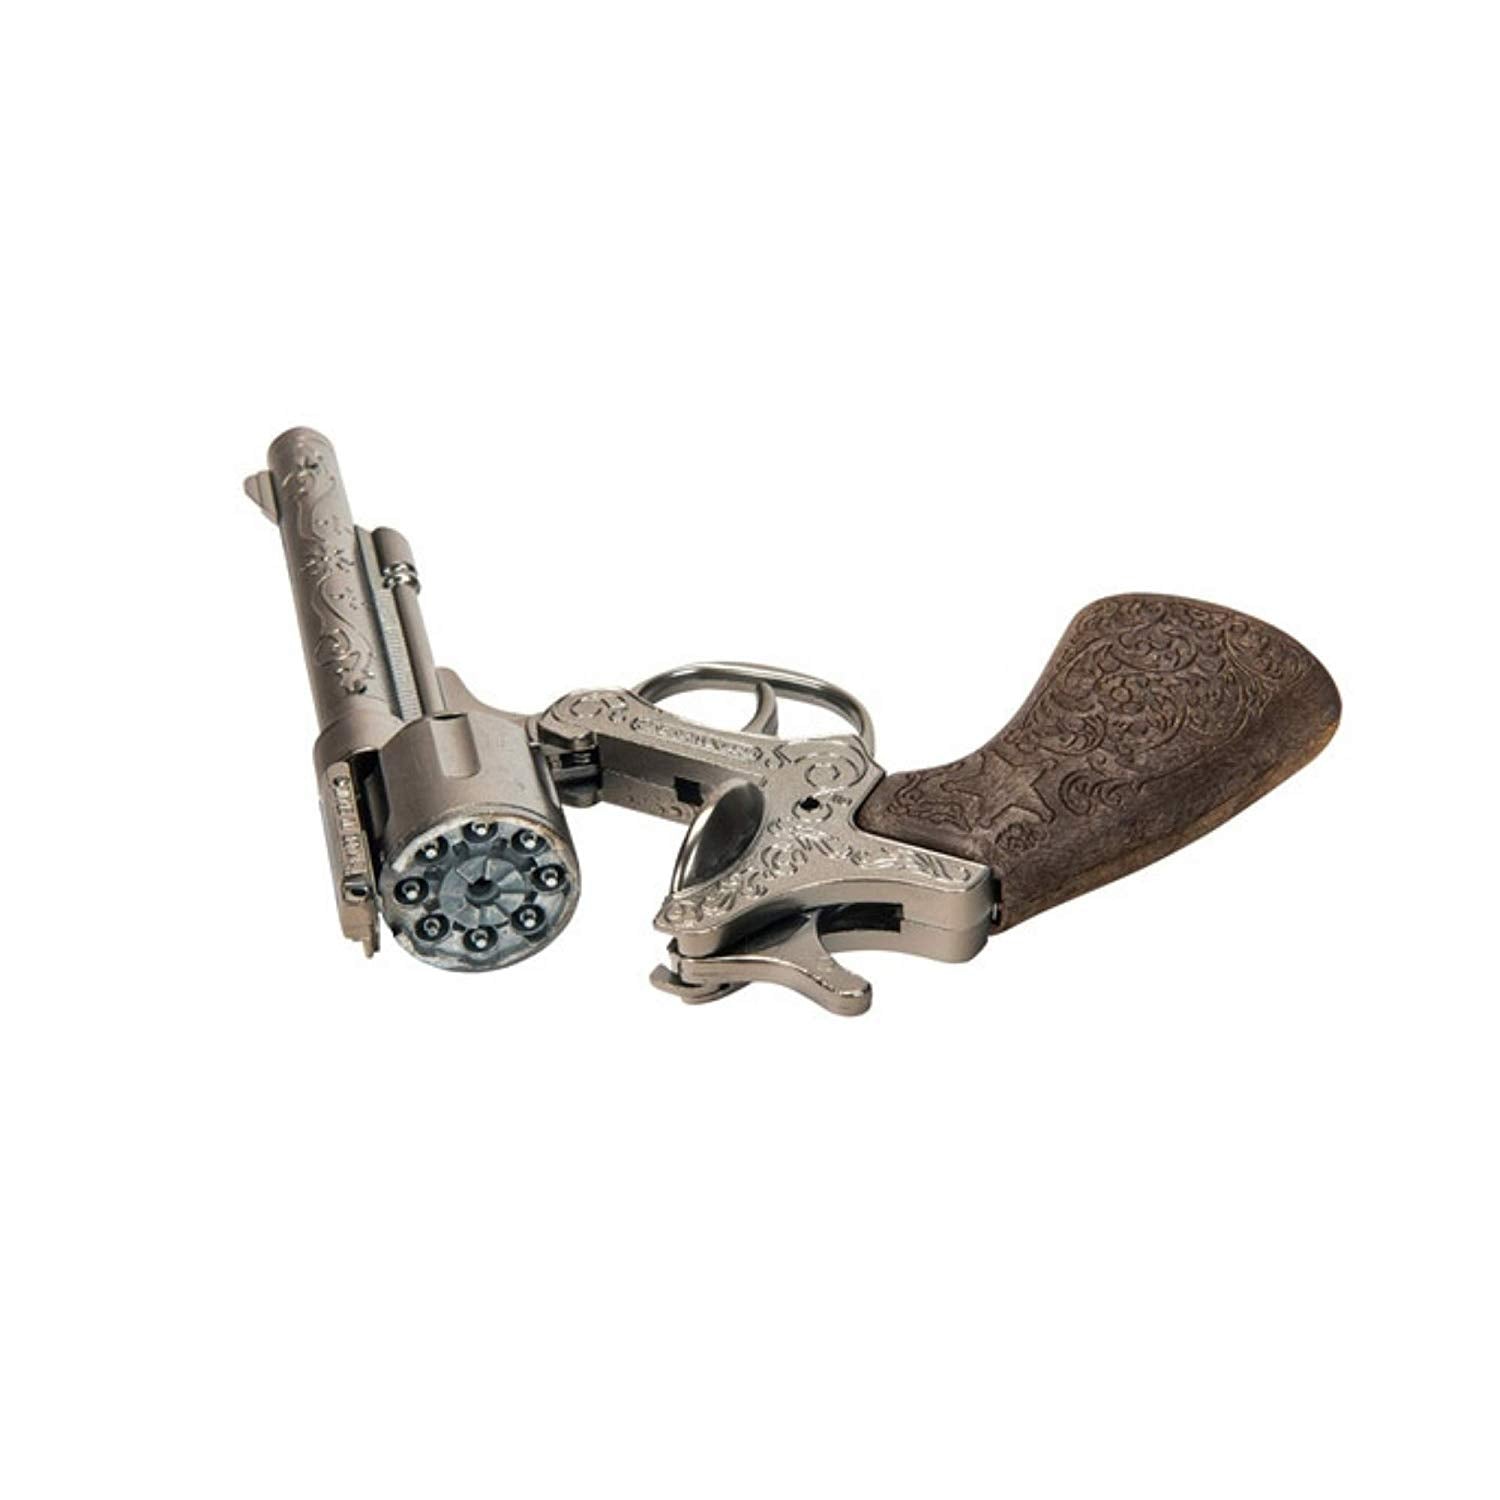 Gonher Wild West 8 Shot Single Gun Holster Totally Toys Ireland - the wild west roblox guns